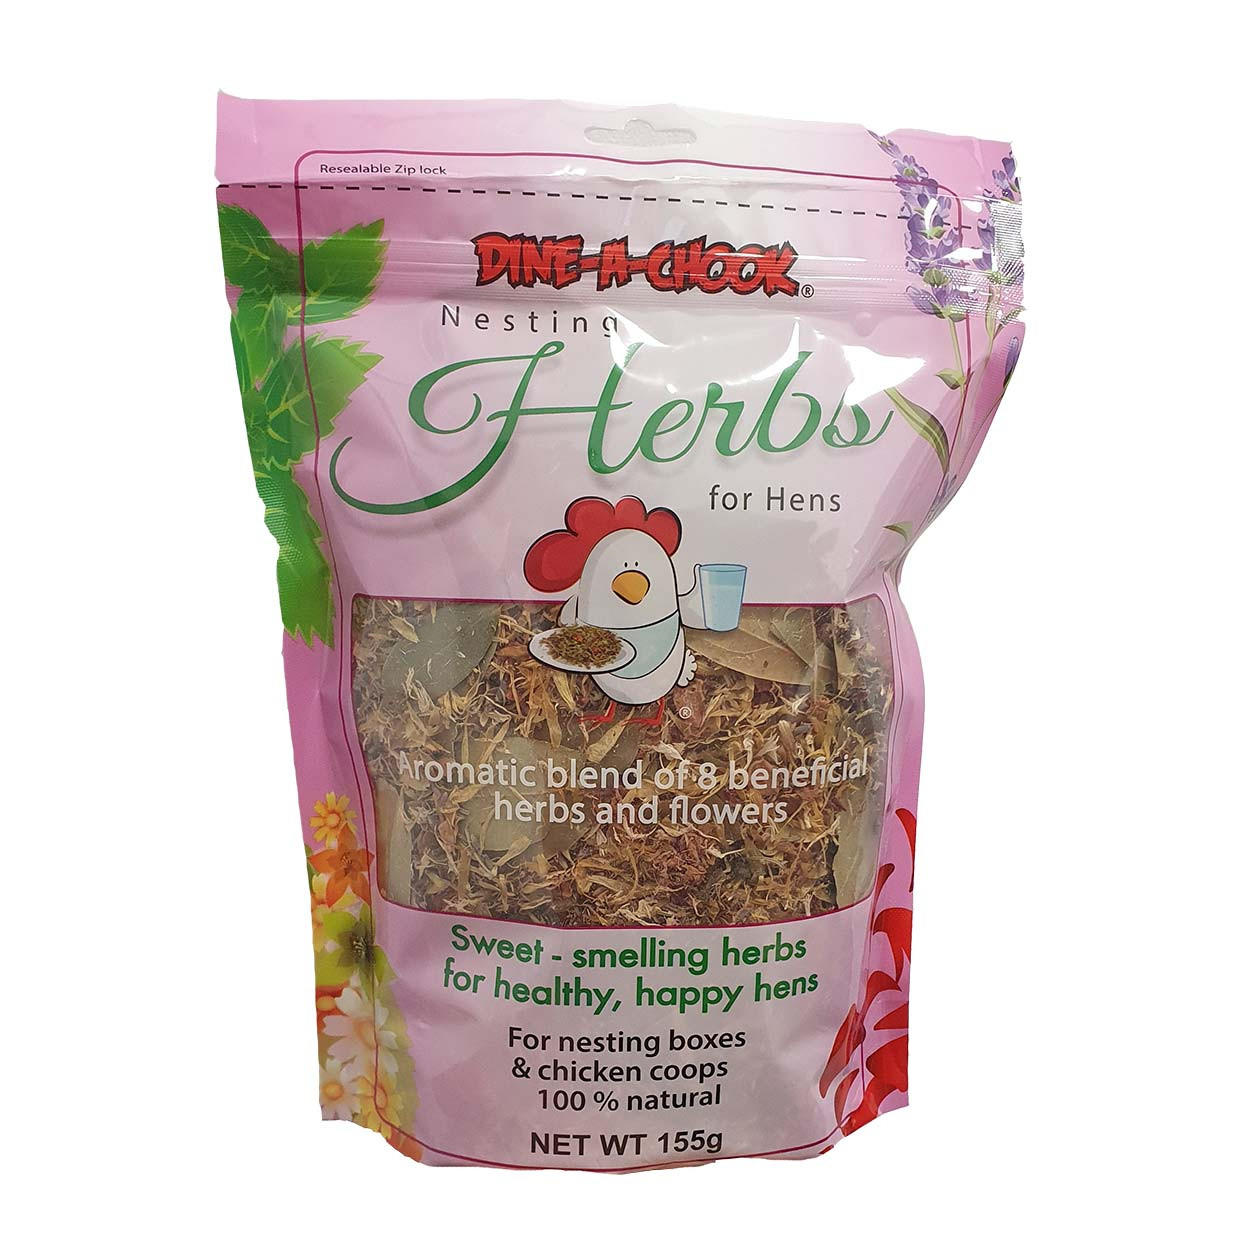 Nesting Herbs for Hens